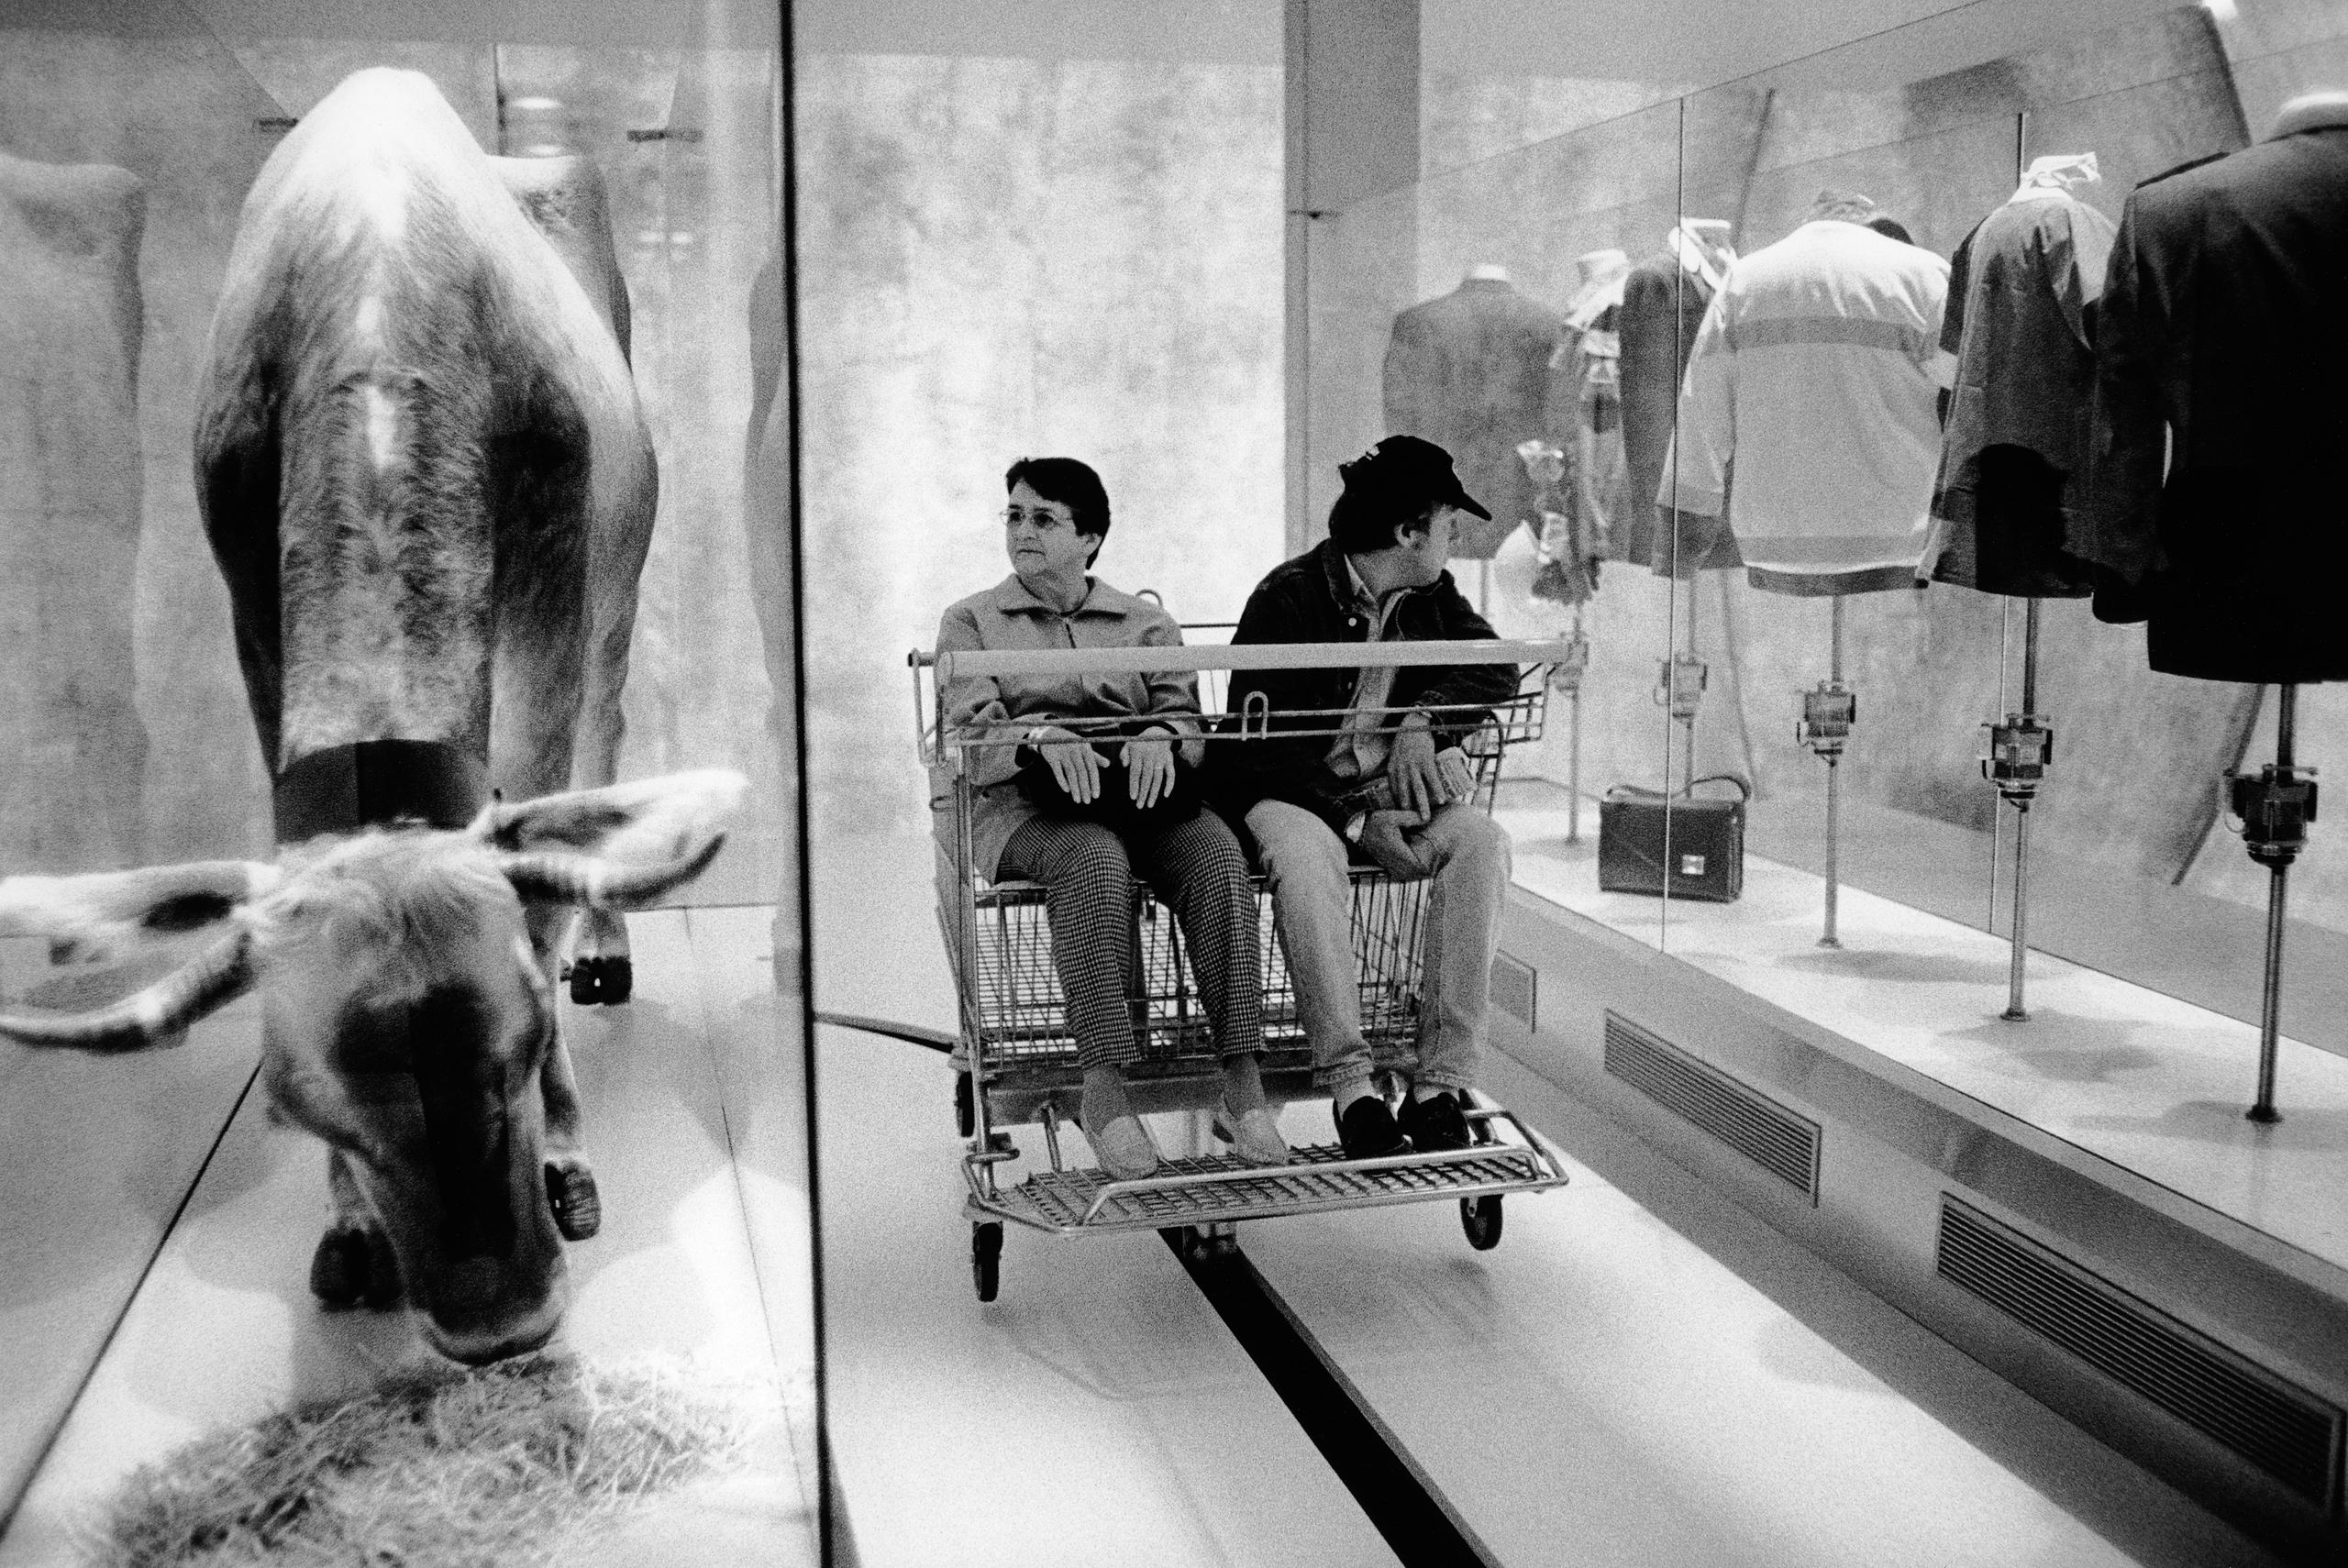 Una vaca y, en otra imagen, una pareja sentada en una silla de ruedas doble